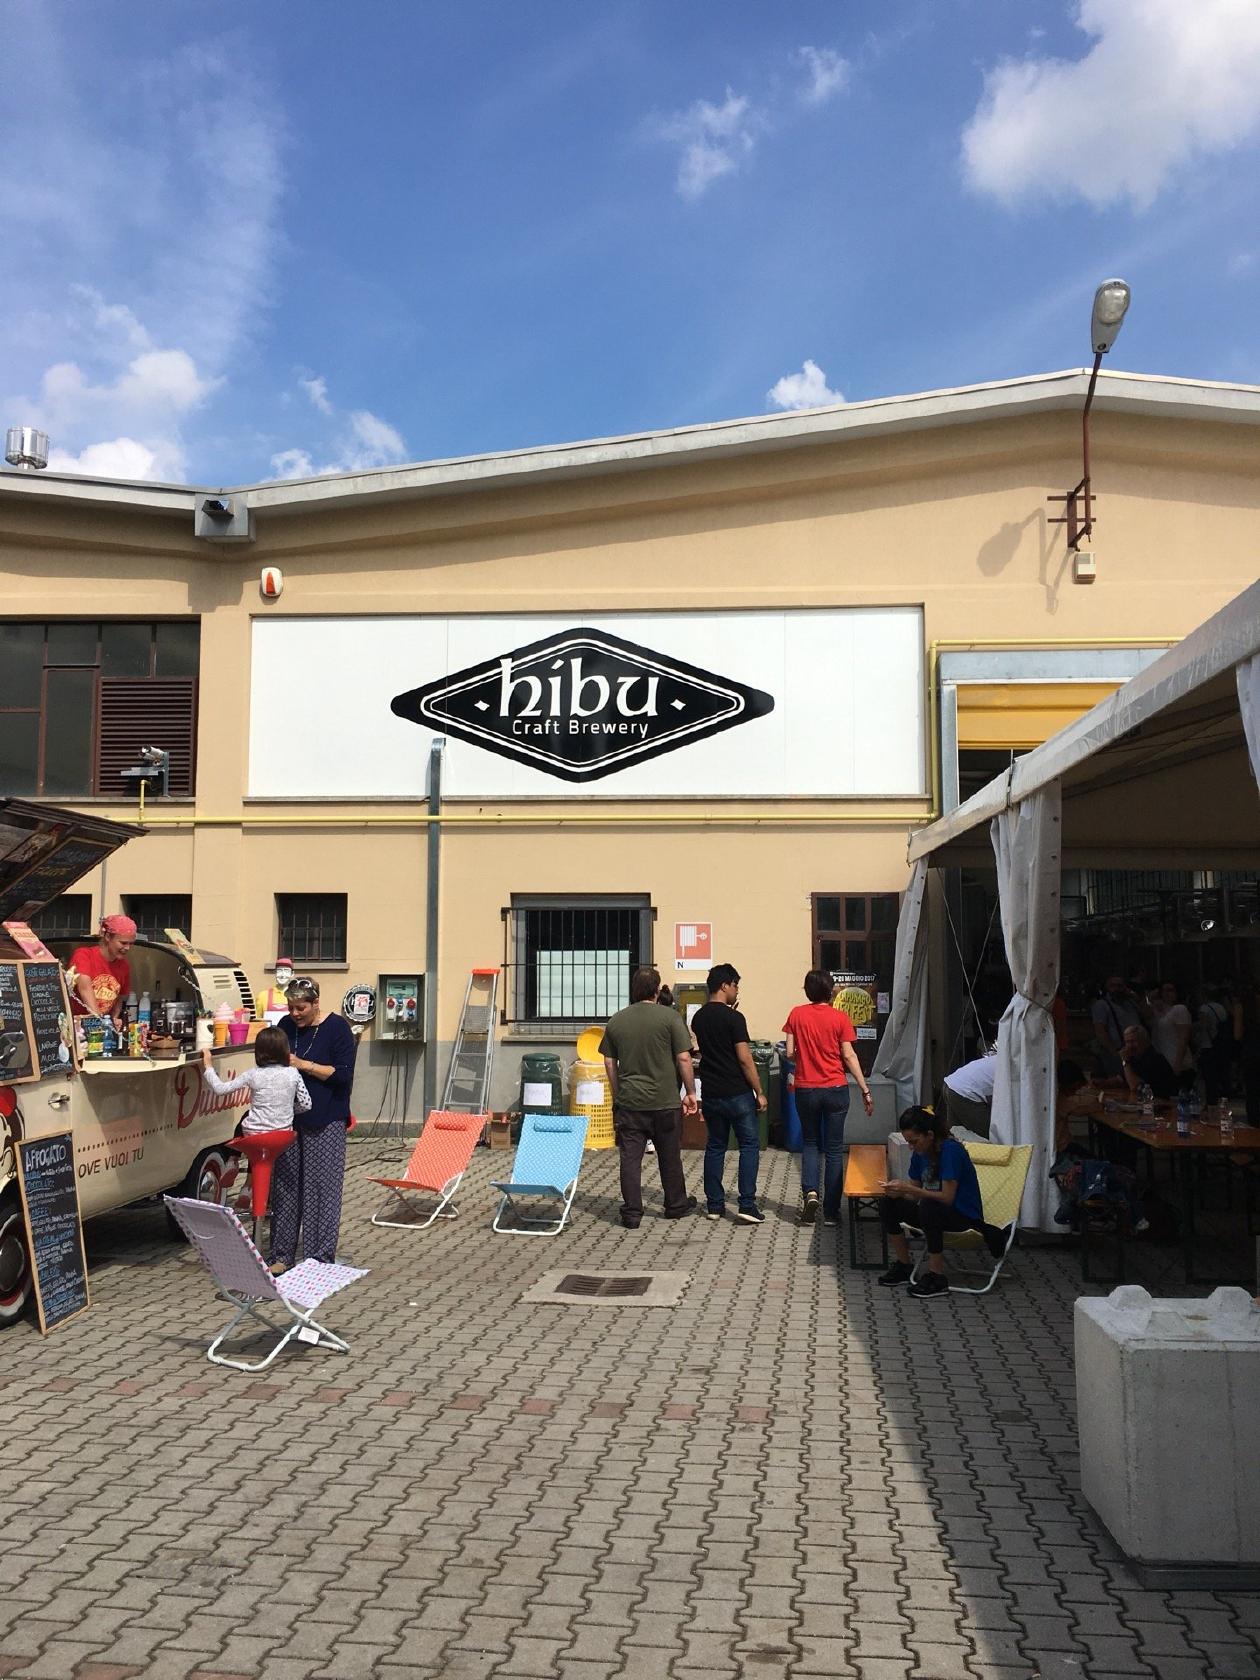 Una festa per celebrare il decennale del birrificio Hibu